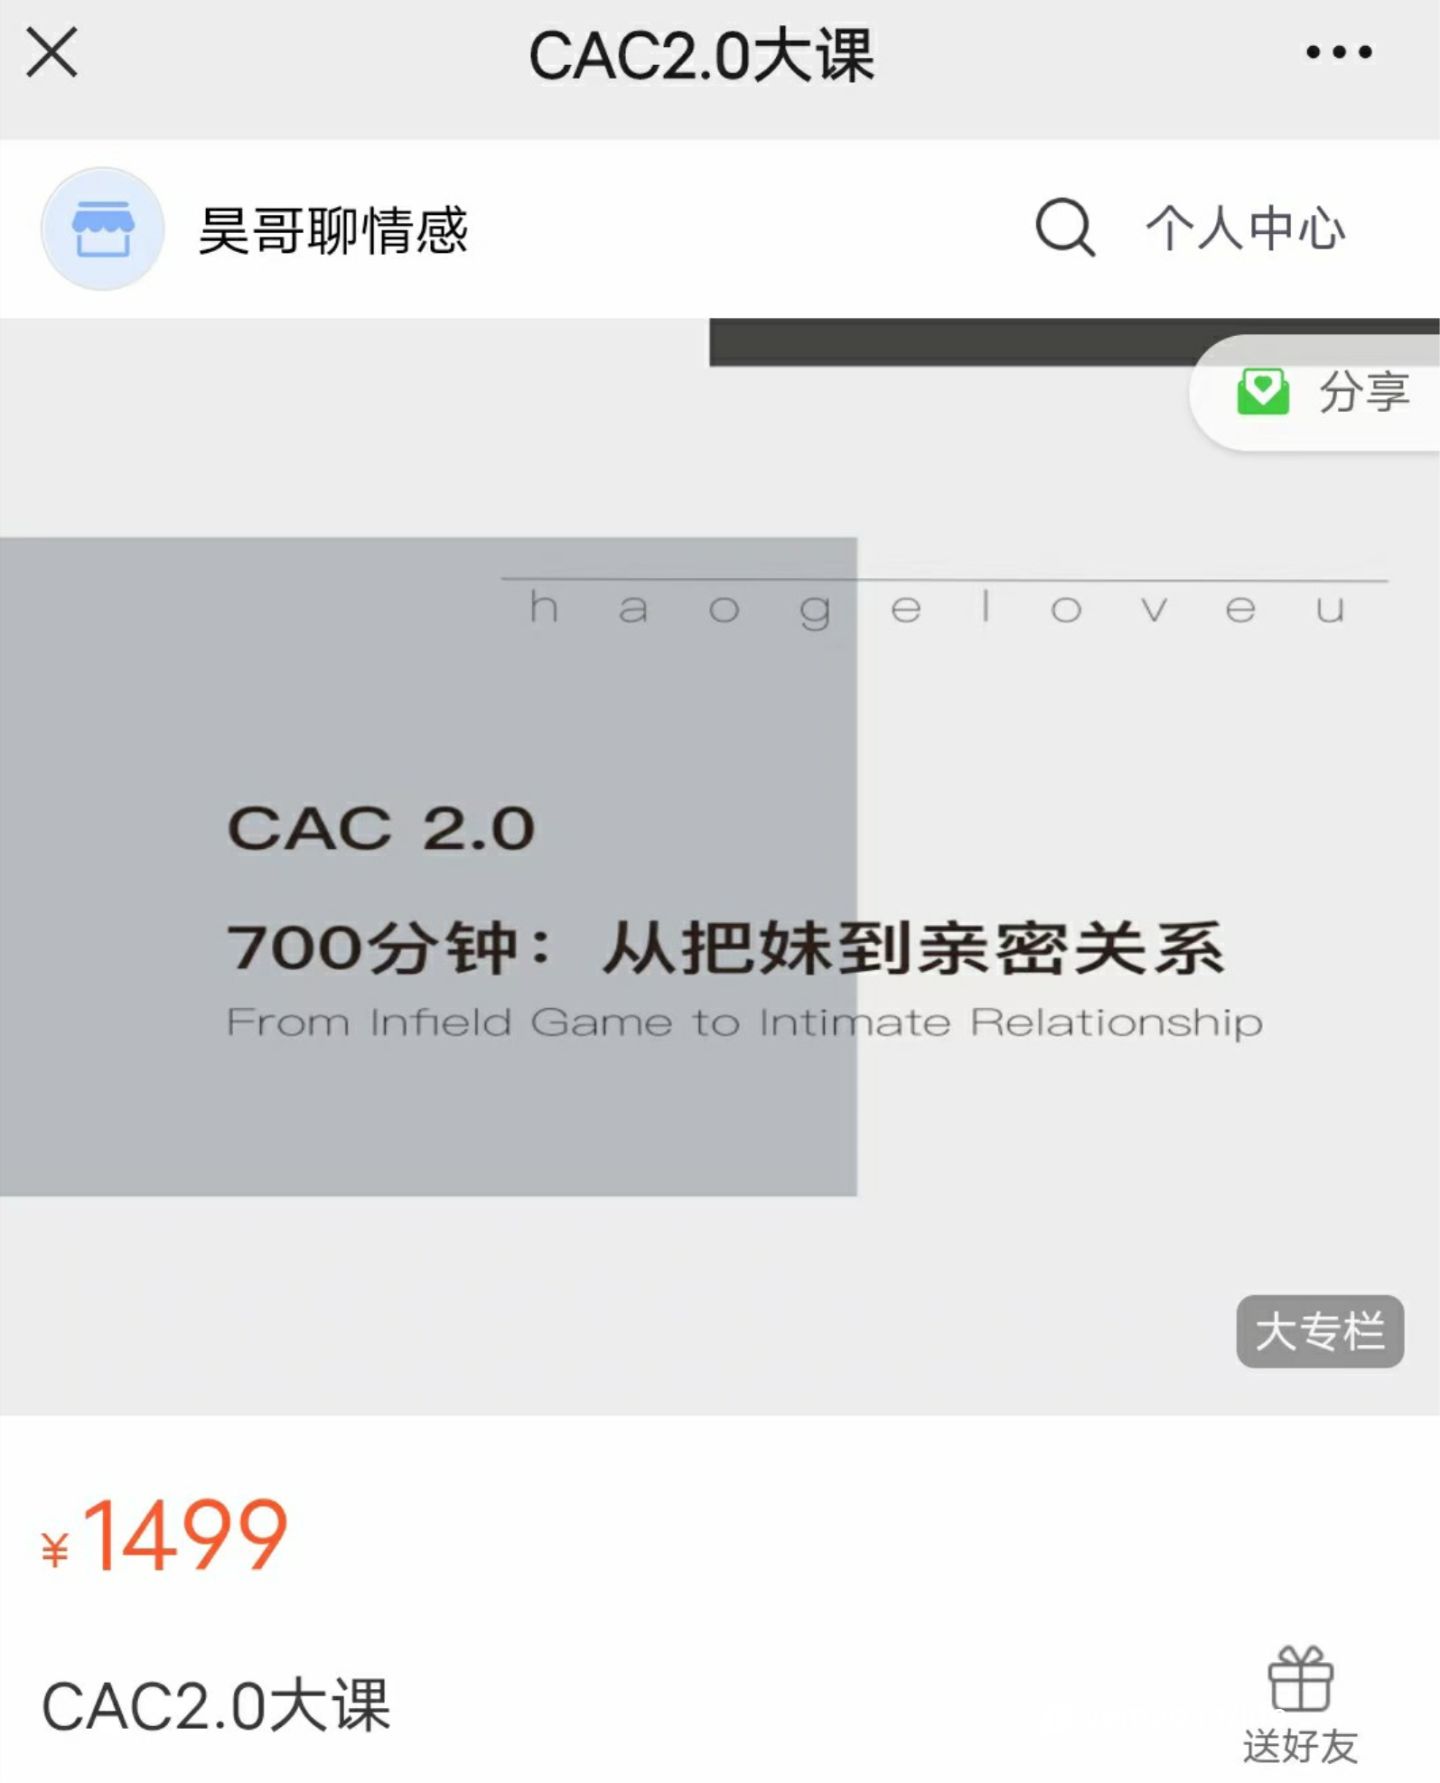 【16.6GB】CAC2.0_700分钟从把妹到亲密关系_百度网盘下载【082407】